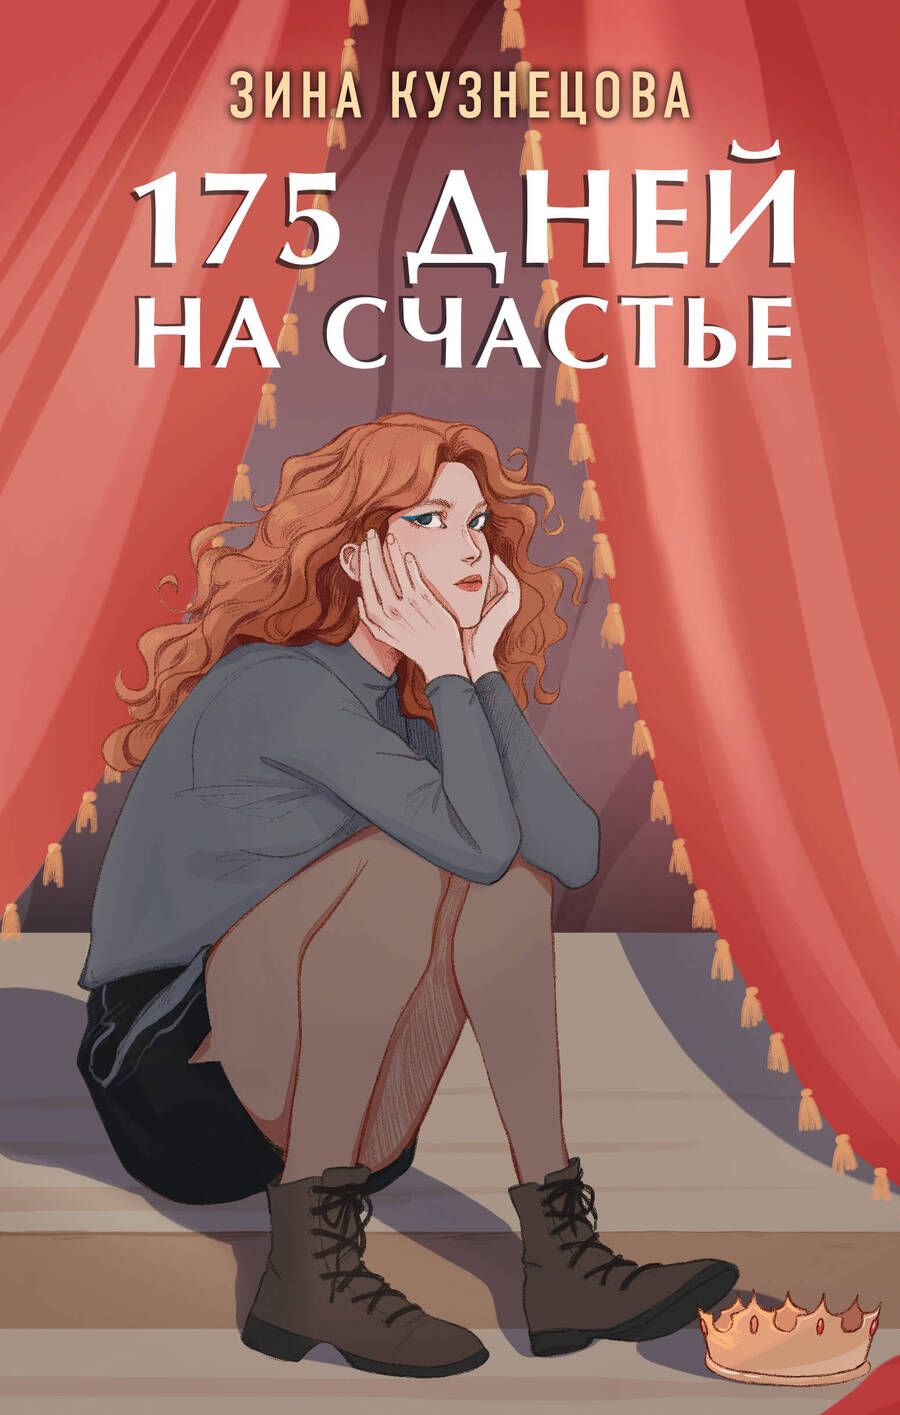 Обложка книги "Кузнецова: 175 дней на счастье"